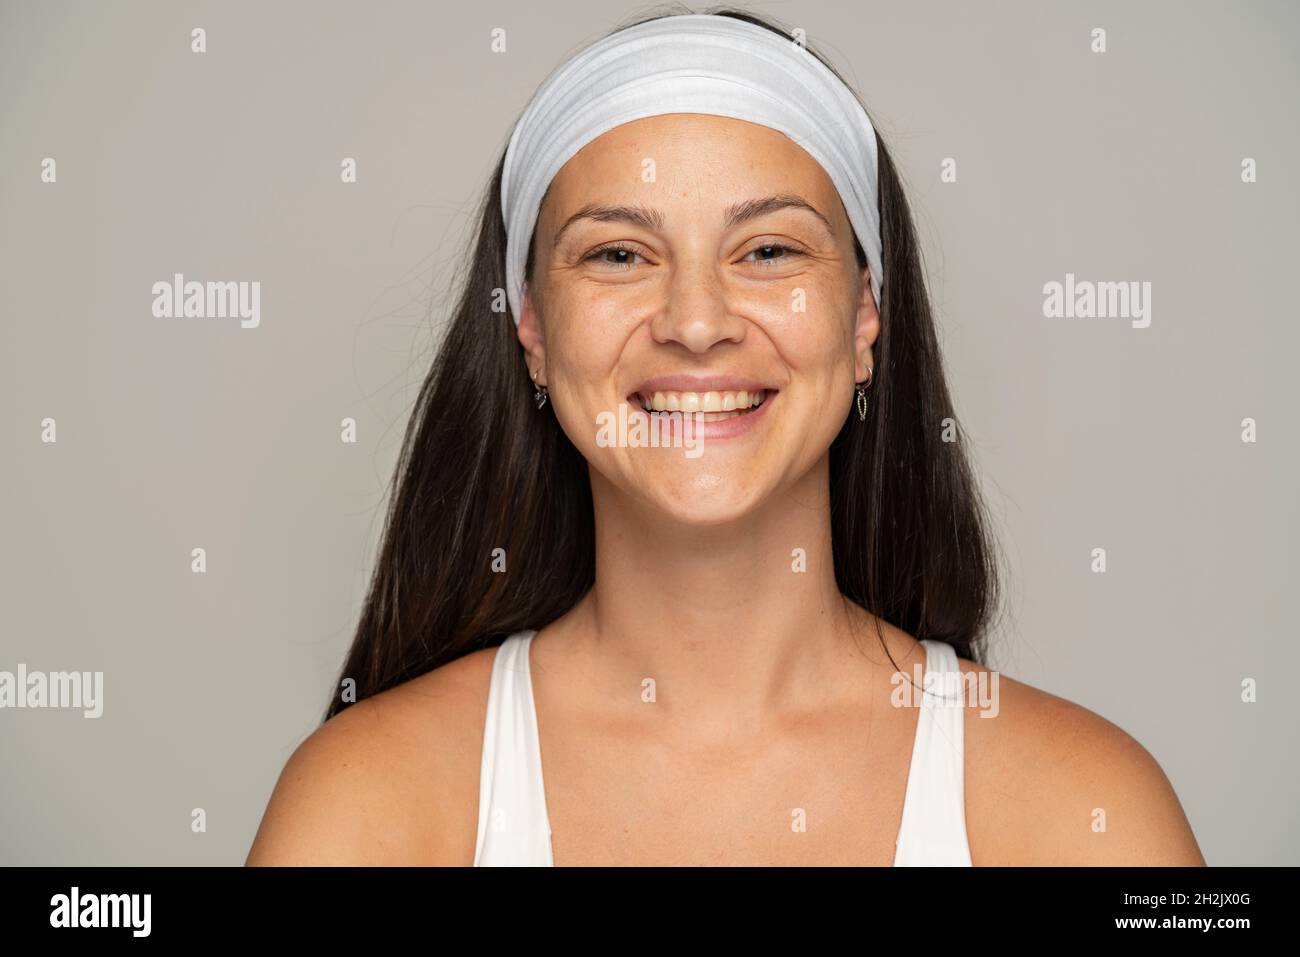 Porträt einer jungen glücklichen Frau ohne Make-up und Stirnband auf grauem Hintergrund Stockfoto